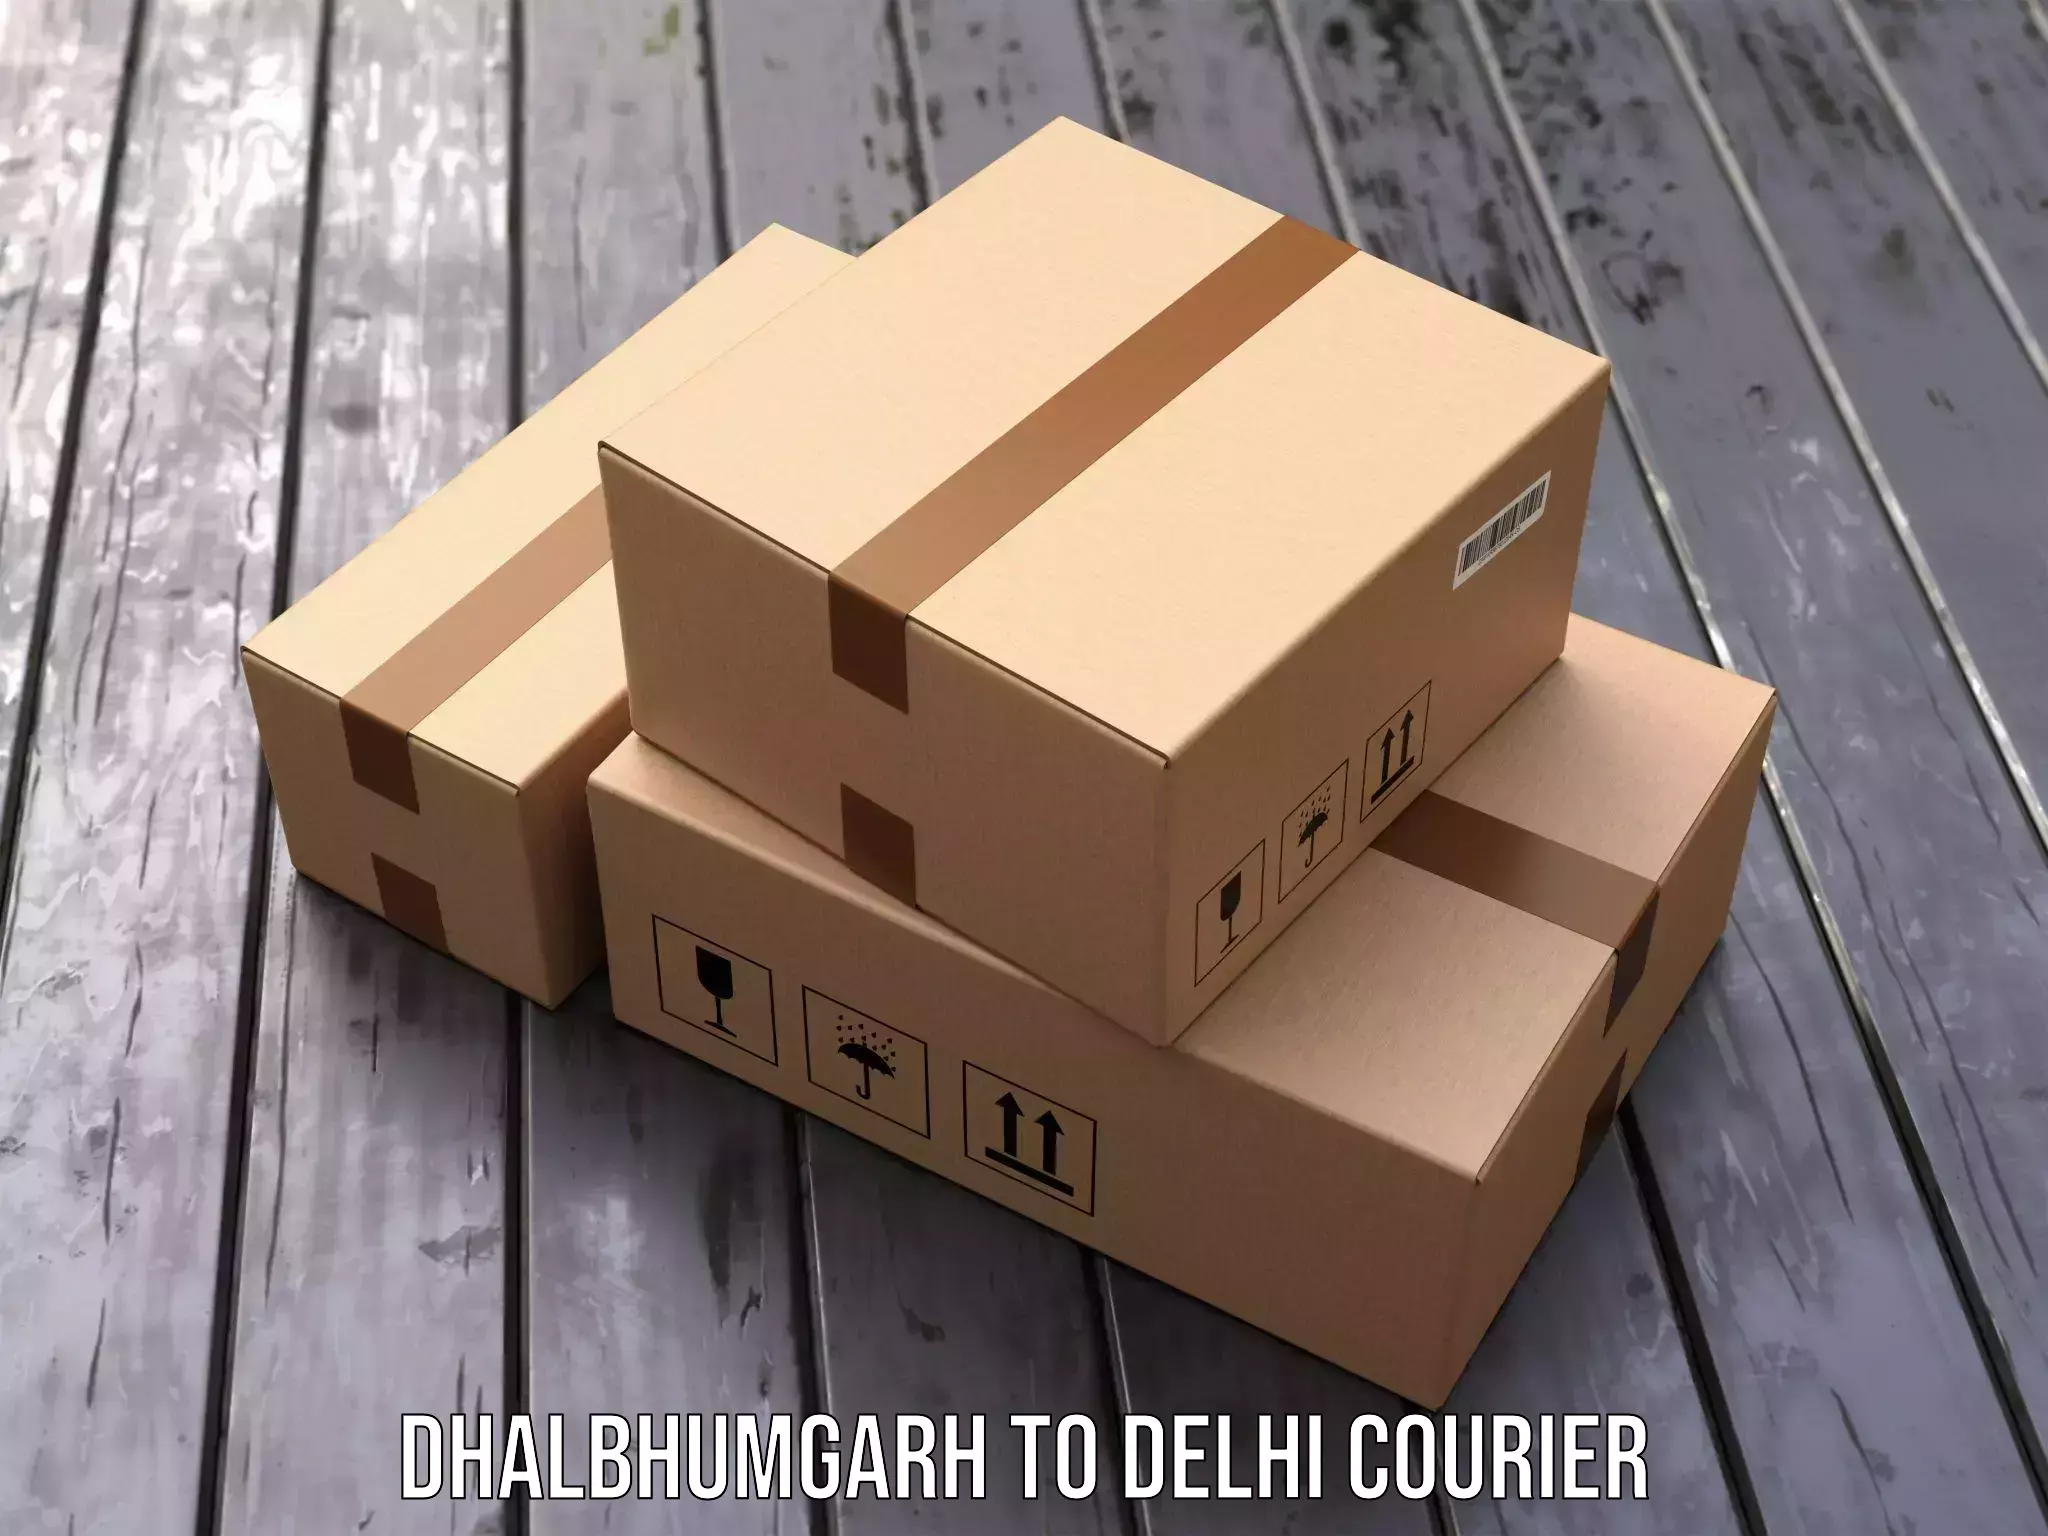 Weekend courier service in Dhalbhumgarh to Delhi